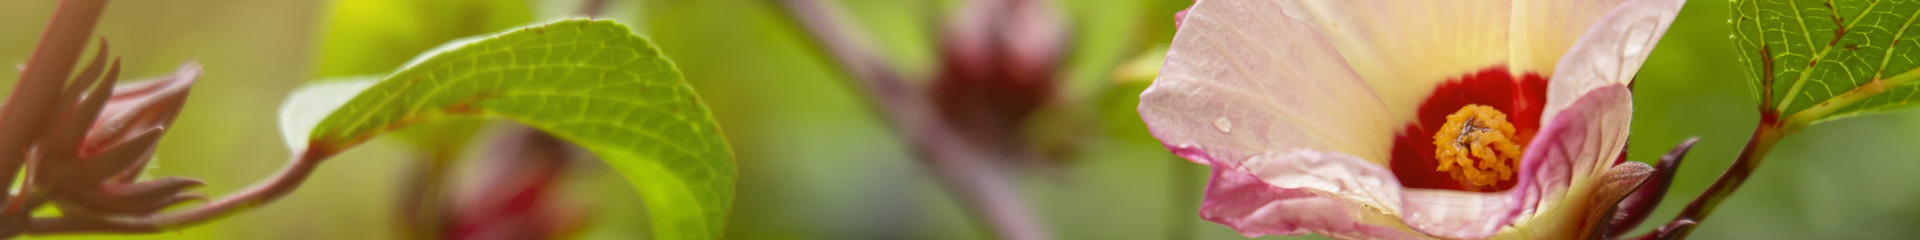 Karkadé bio : des fleurs d’hibiscus aux nombreuses vertus | Bioénergies